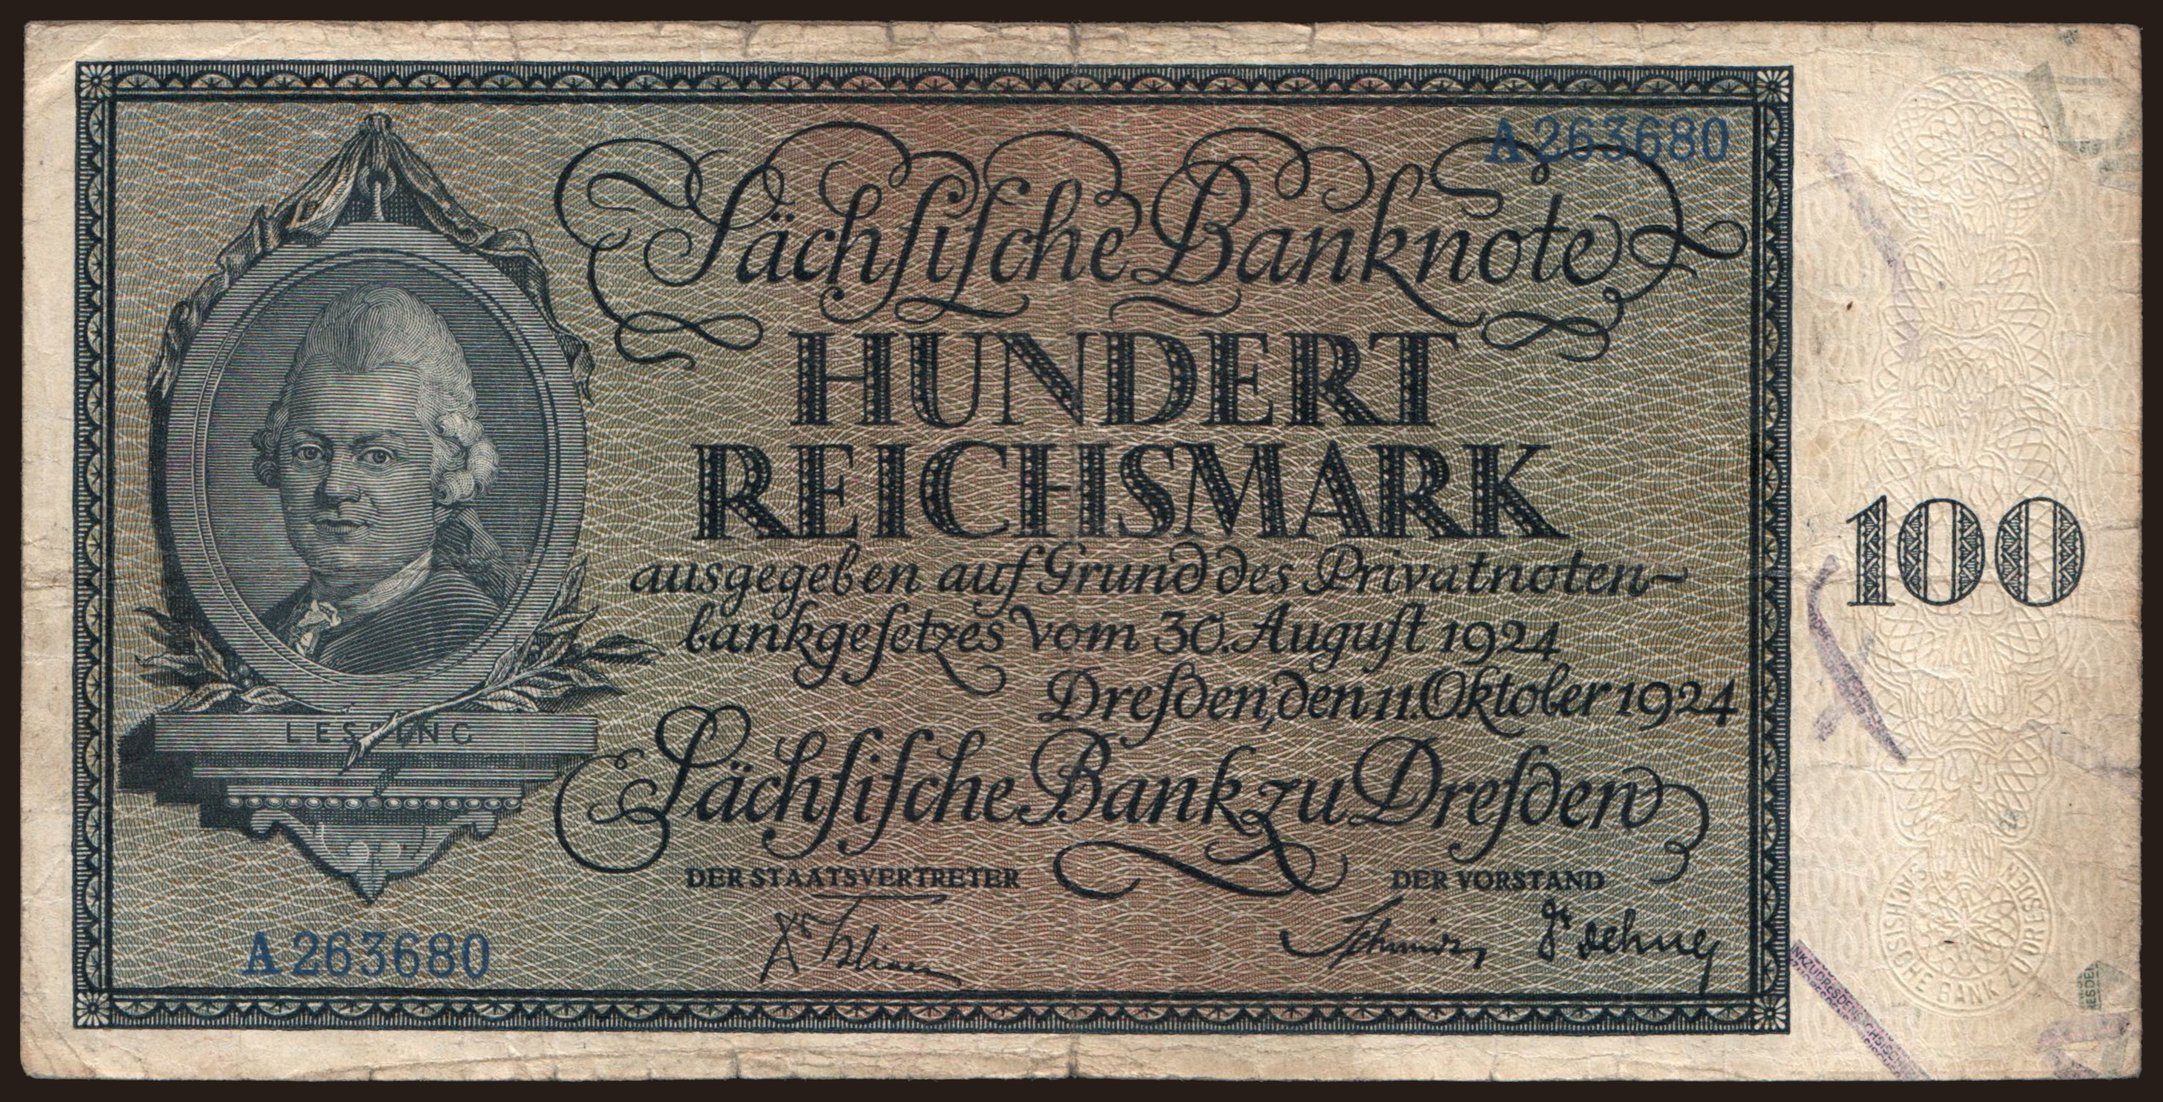 Sächsische Bank zu Dresden, 100 Reichsmark, 1924